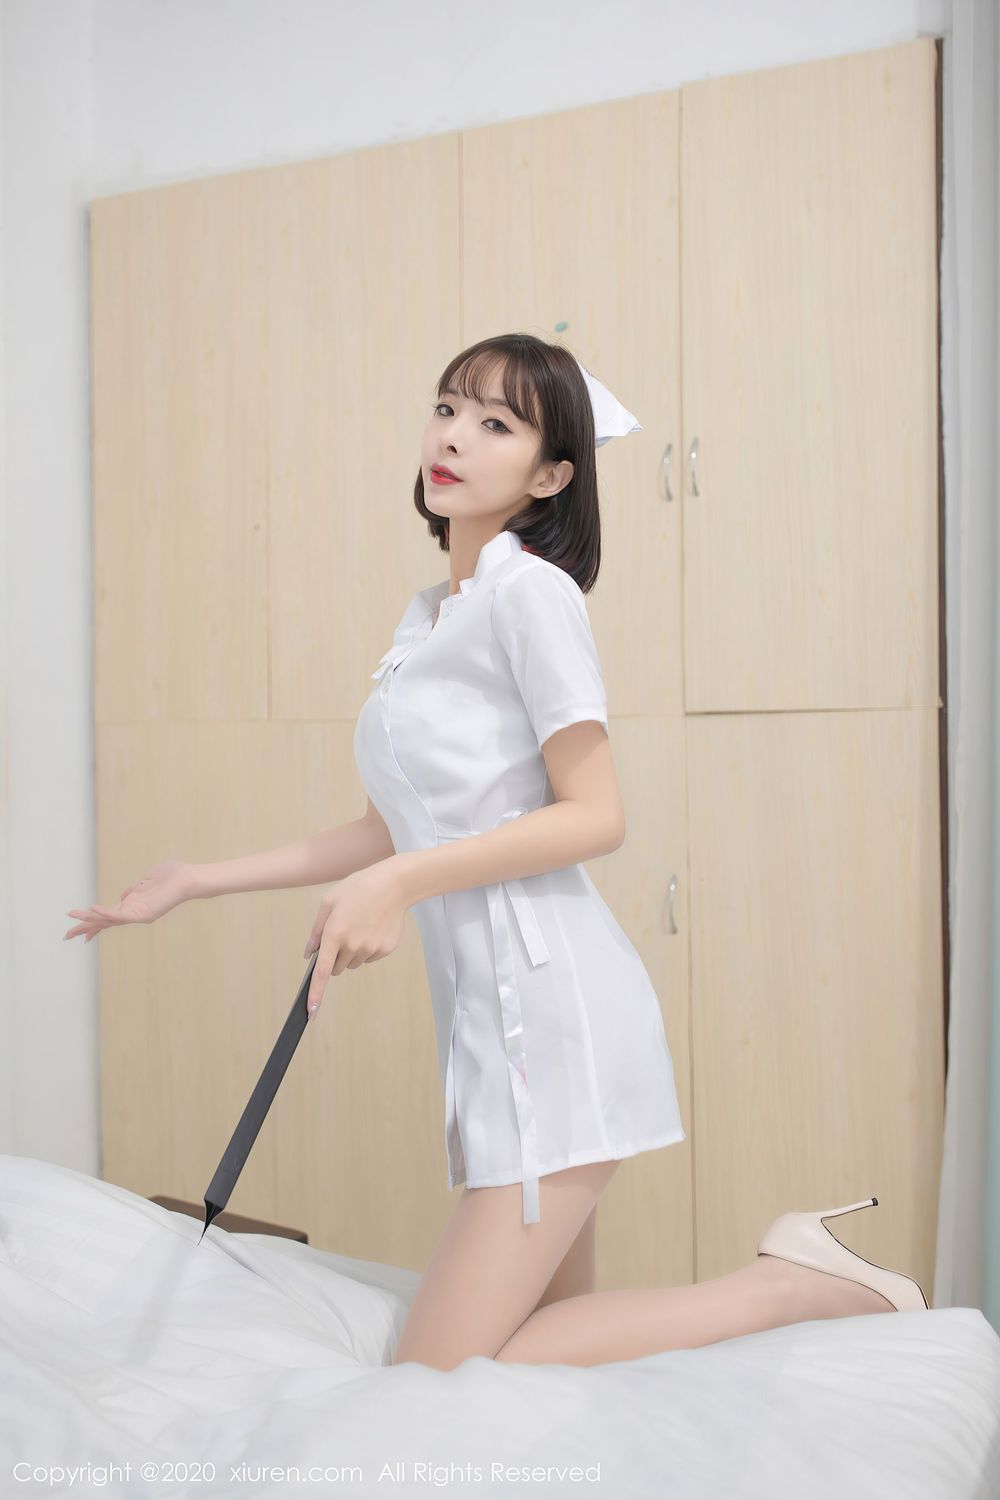 美女模特陈小喵 - 丝袜美腿护士装扮性感写真